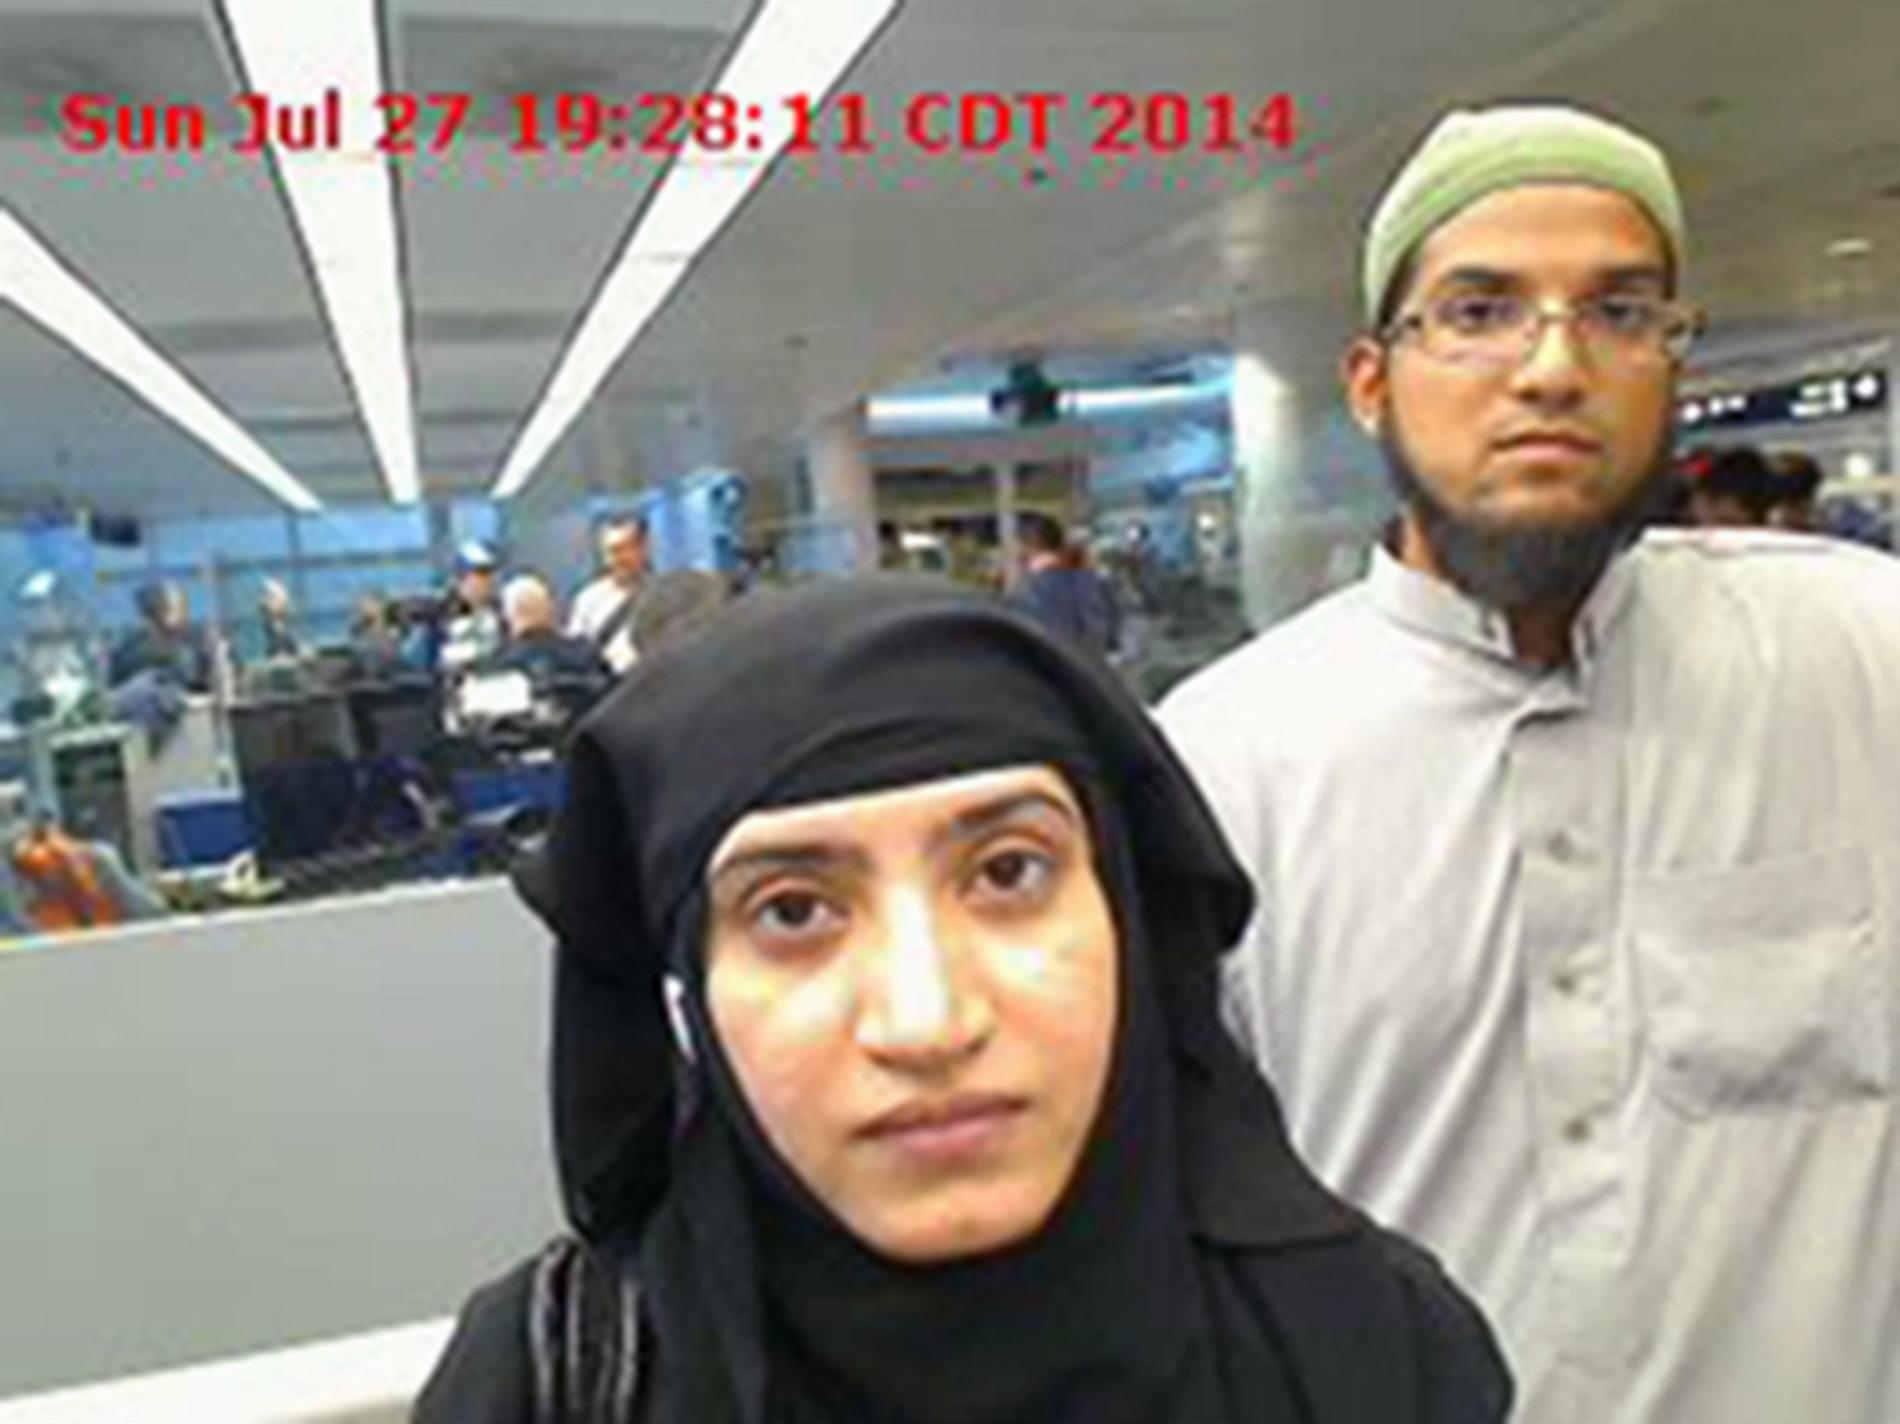 Amerikanska myndigheternas bild från juli 2014 då Tashfeen Malik och Sued Rizwan Farook passerade flygplatsen O'Hare International i Chicago.